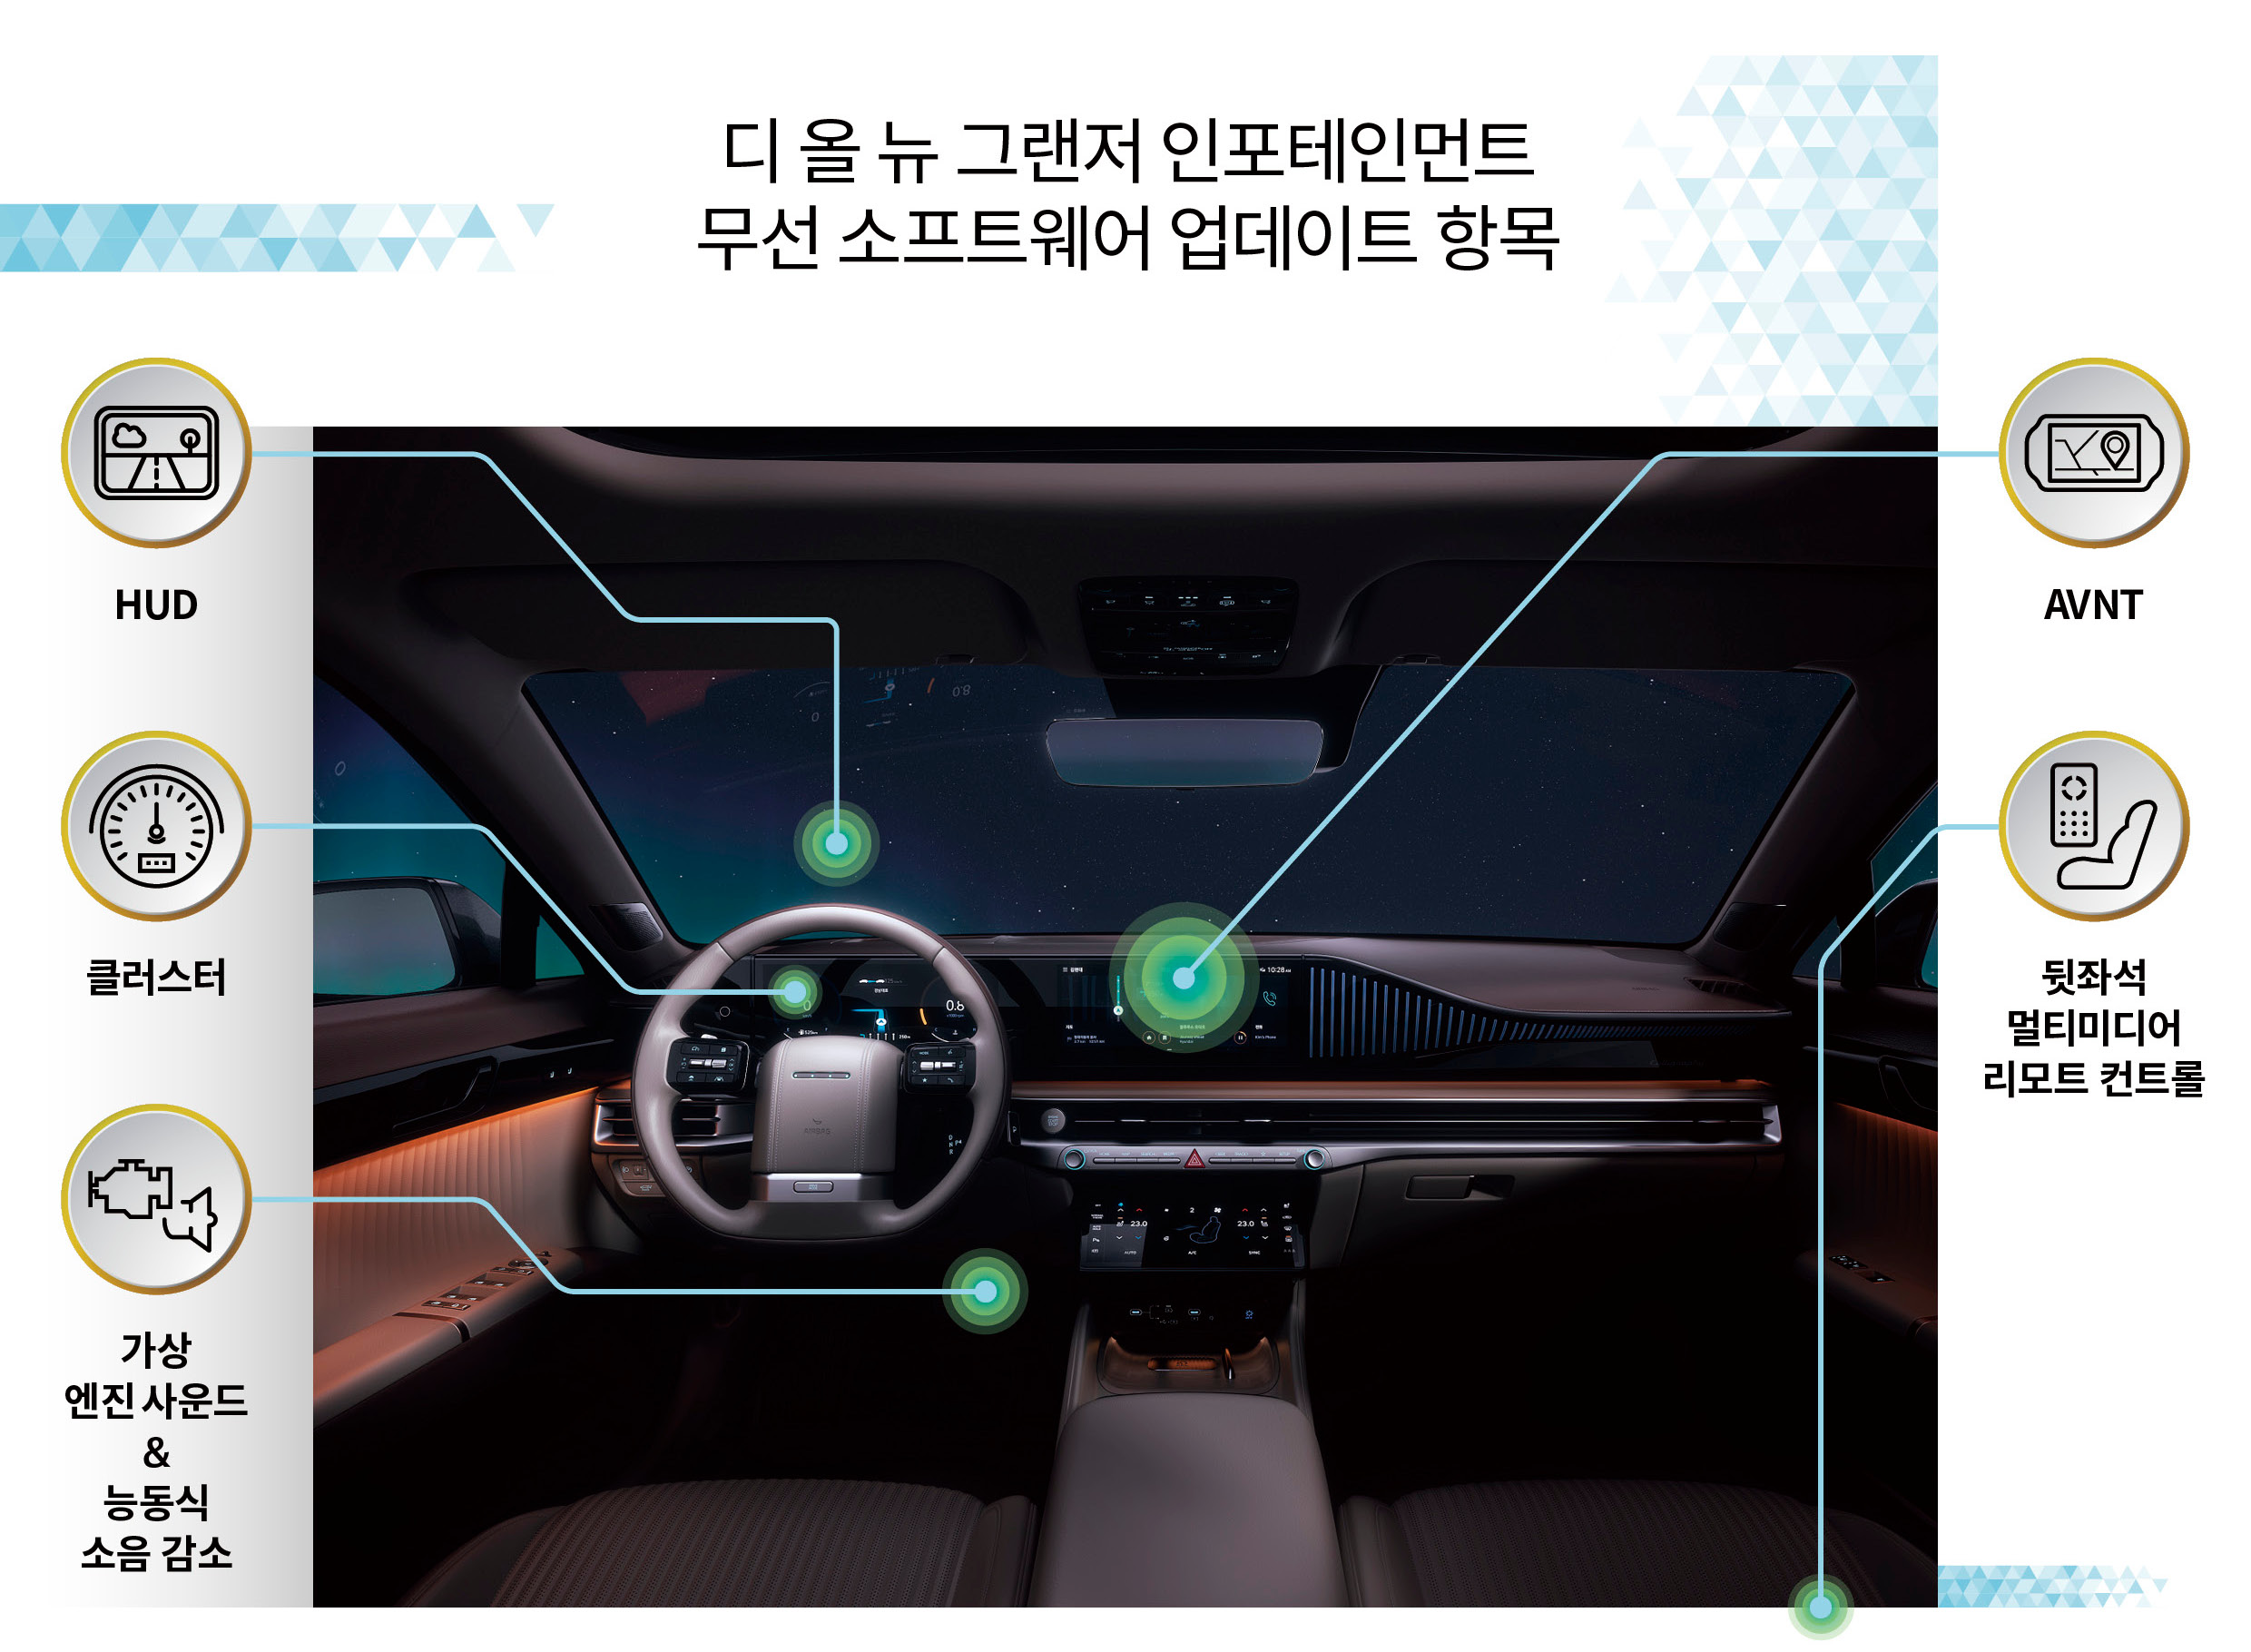 현대자동차 디 올 뉴 그랜저의 인포테인먼트 관련 무선 소프트웨어 업데이트를 표현한 그림